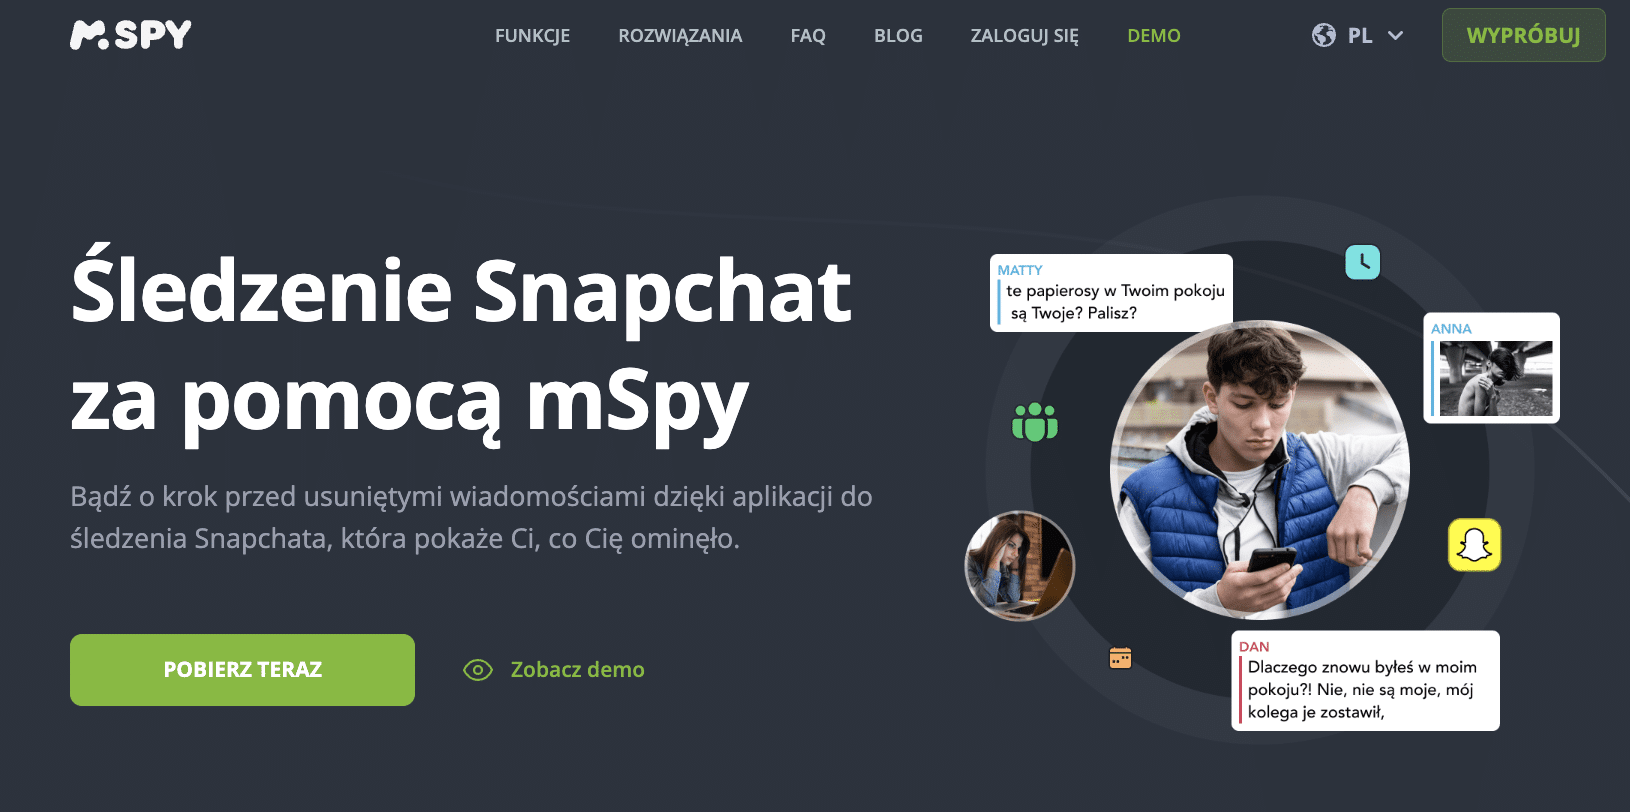 Śledzenie Snapchat za pomocą mSpy